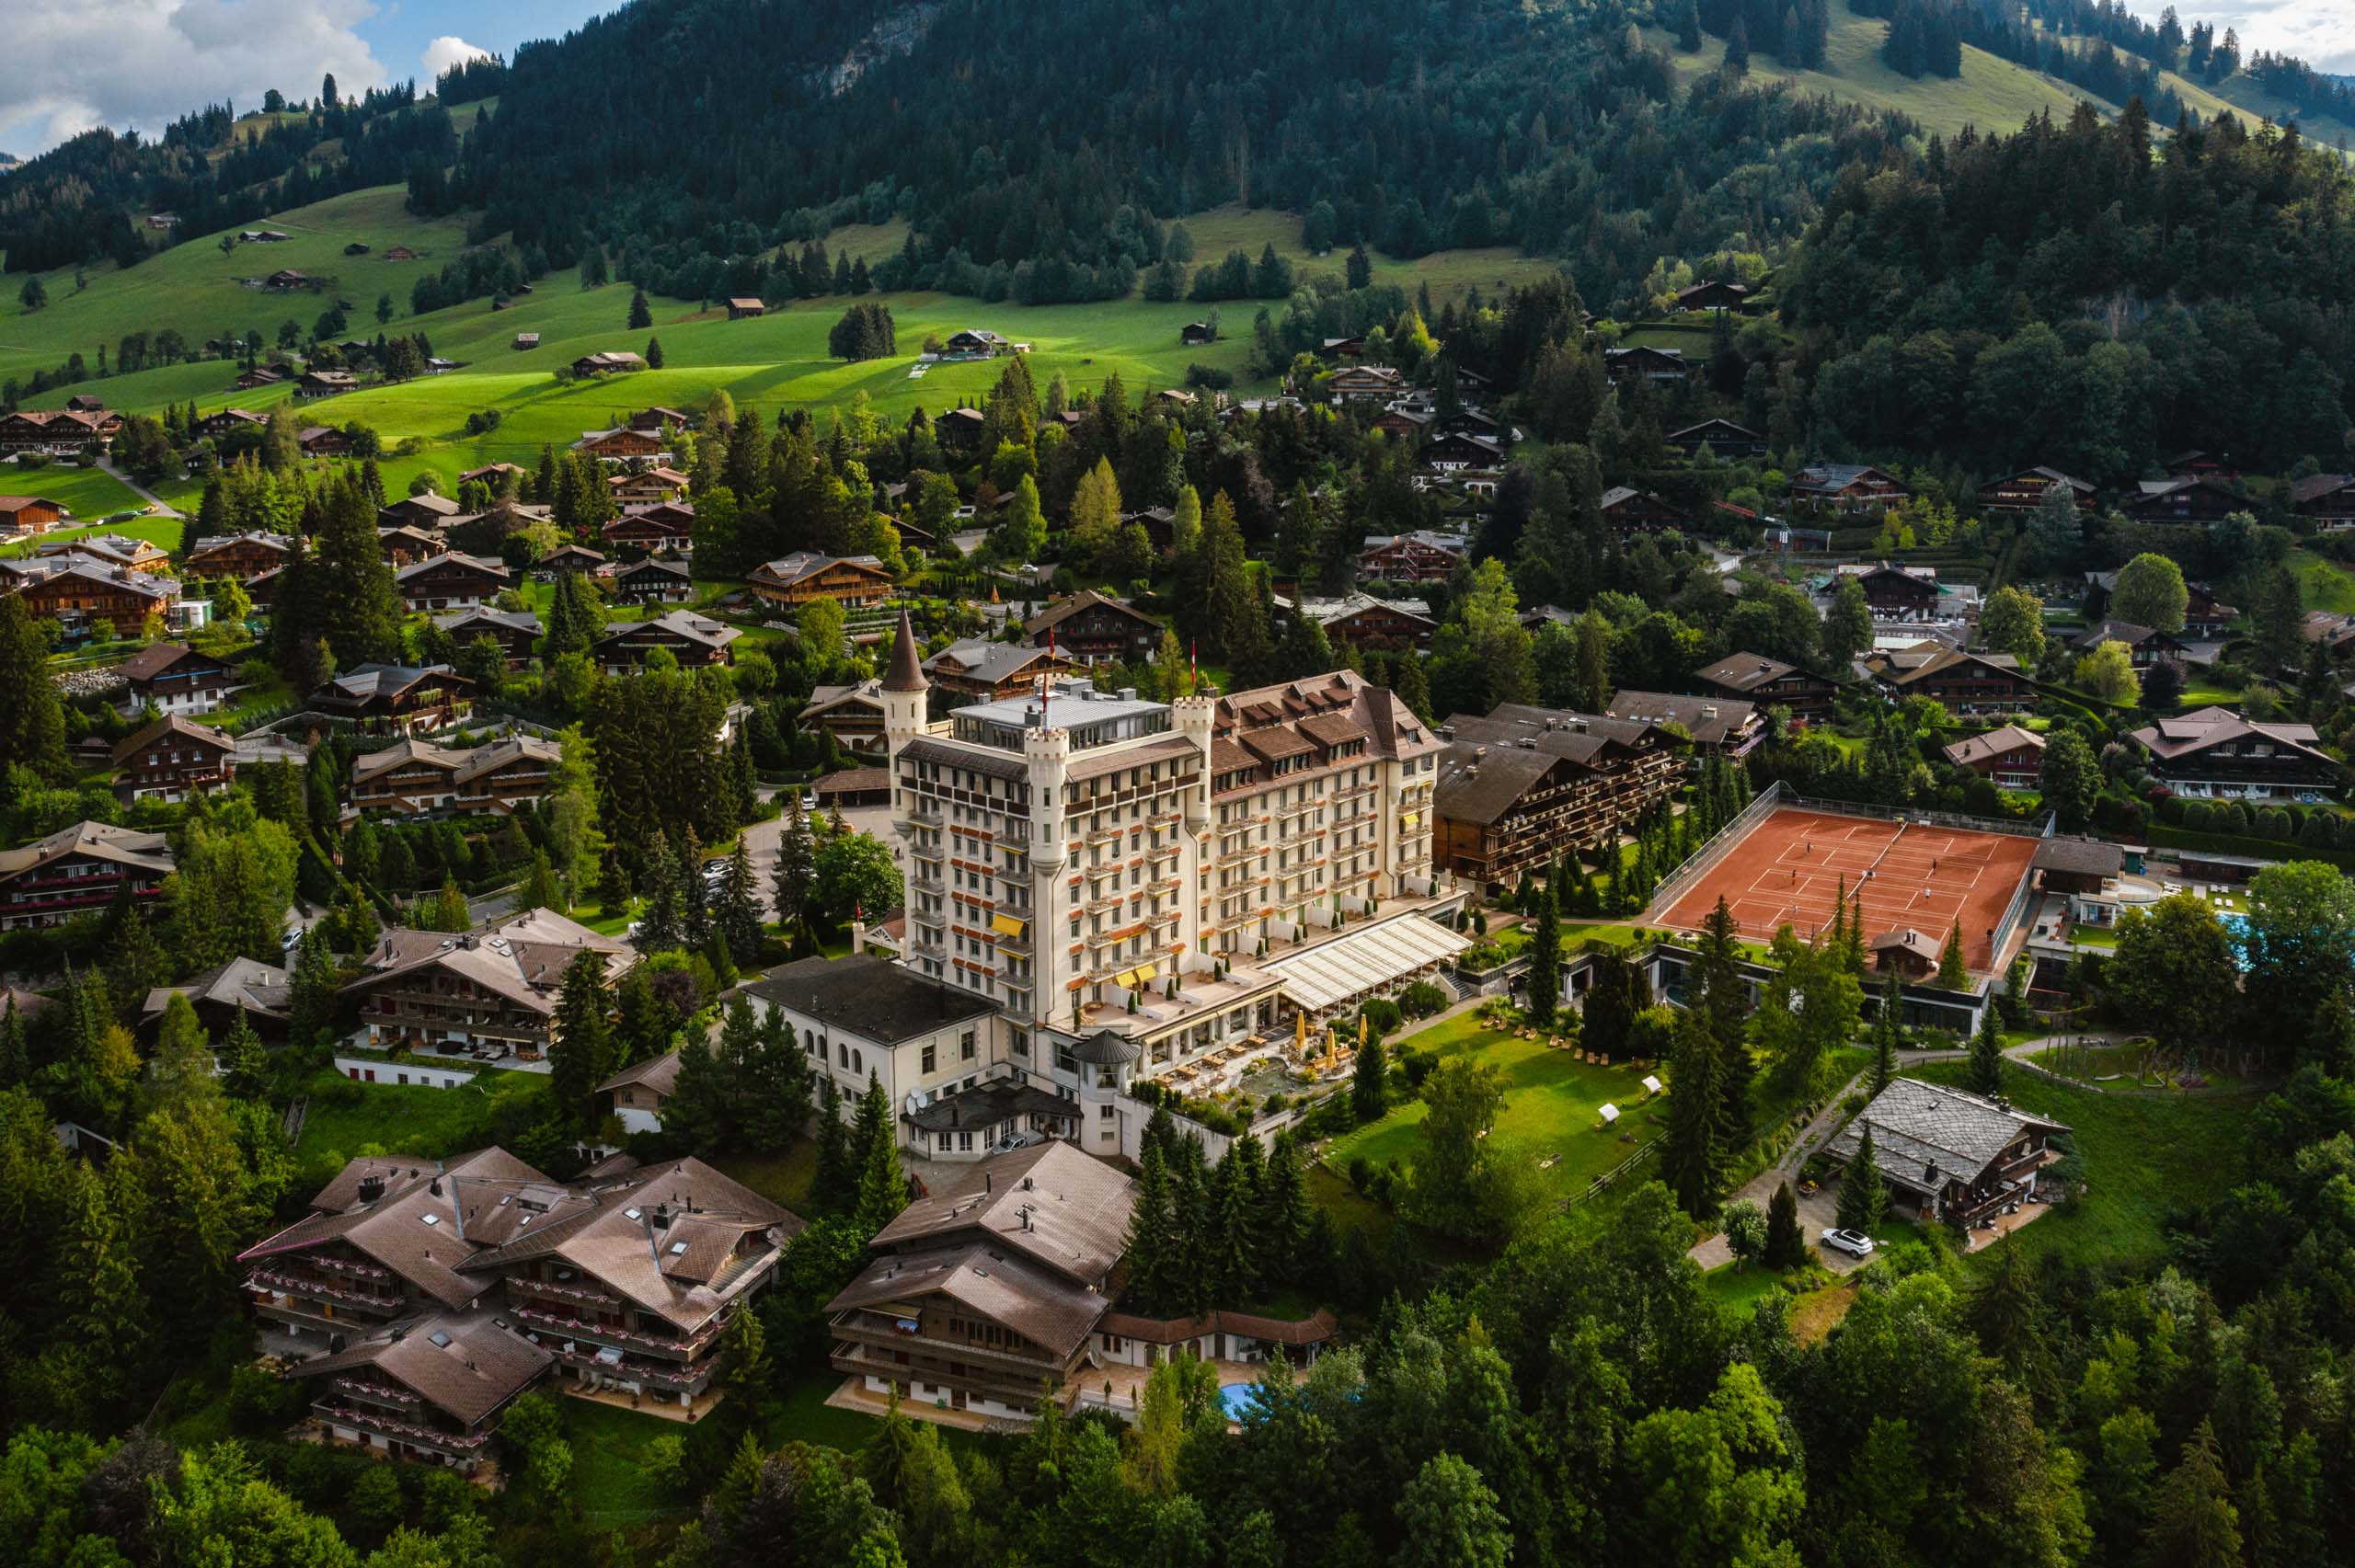 Swiss Deluxe Hotels Stories Summer 2021 The View Andrea Scherz 01 DJI 0570 Ecirgb